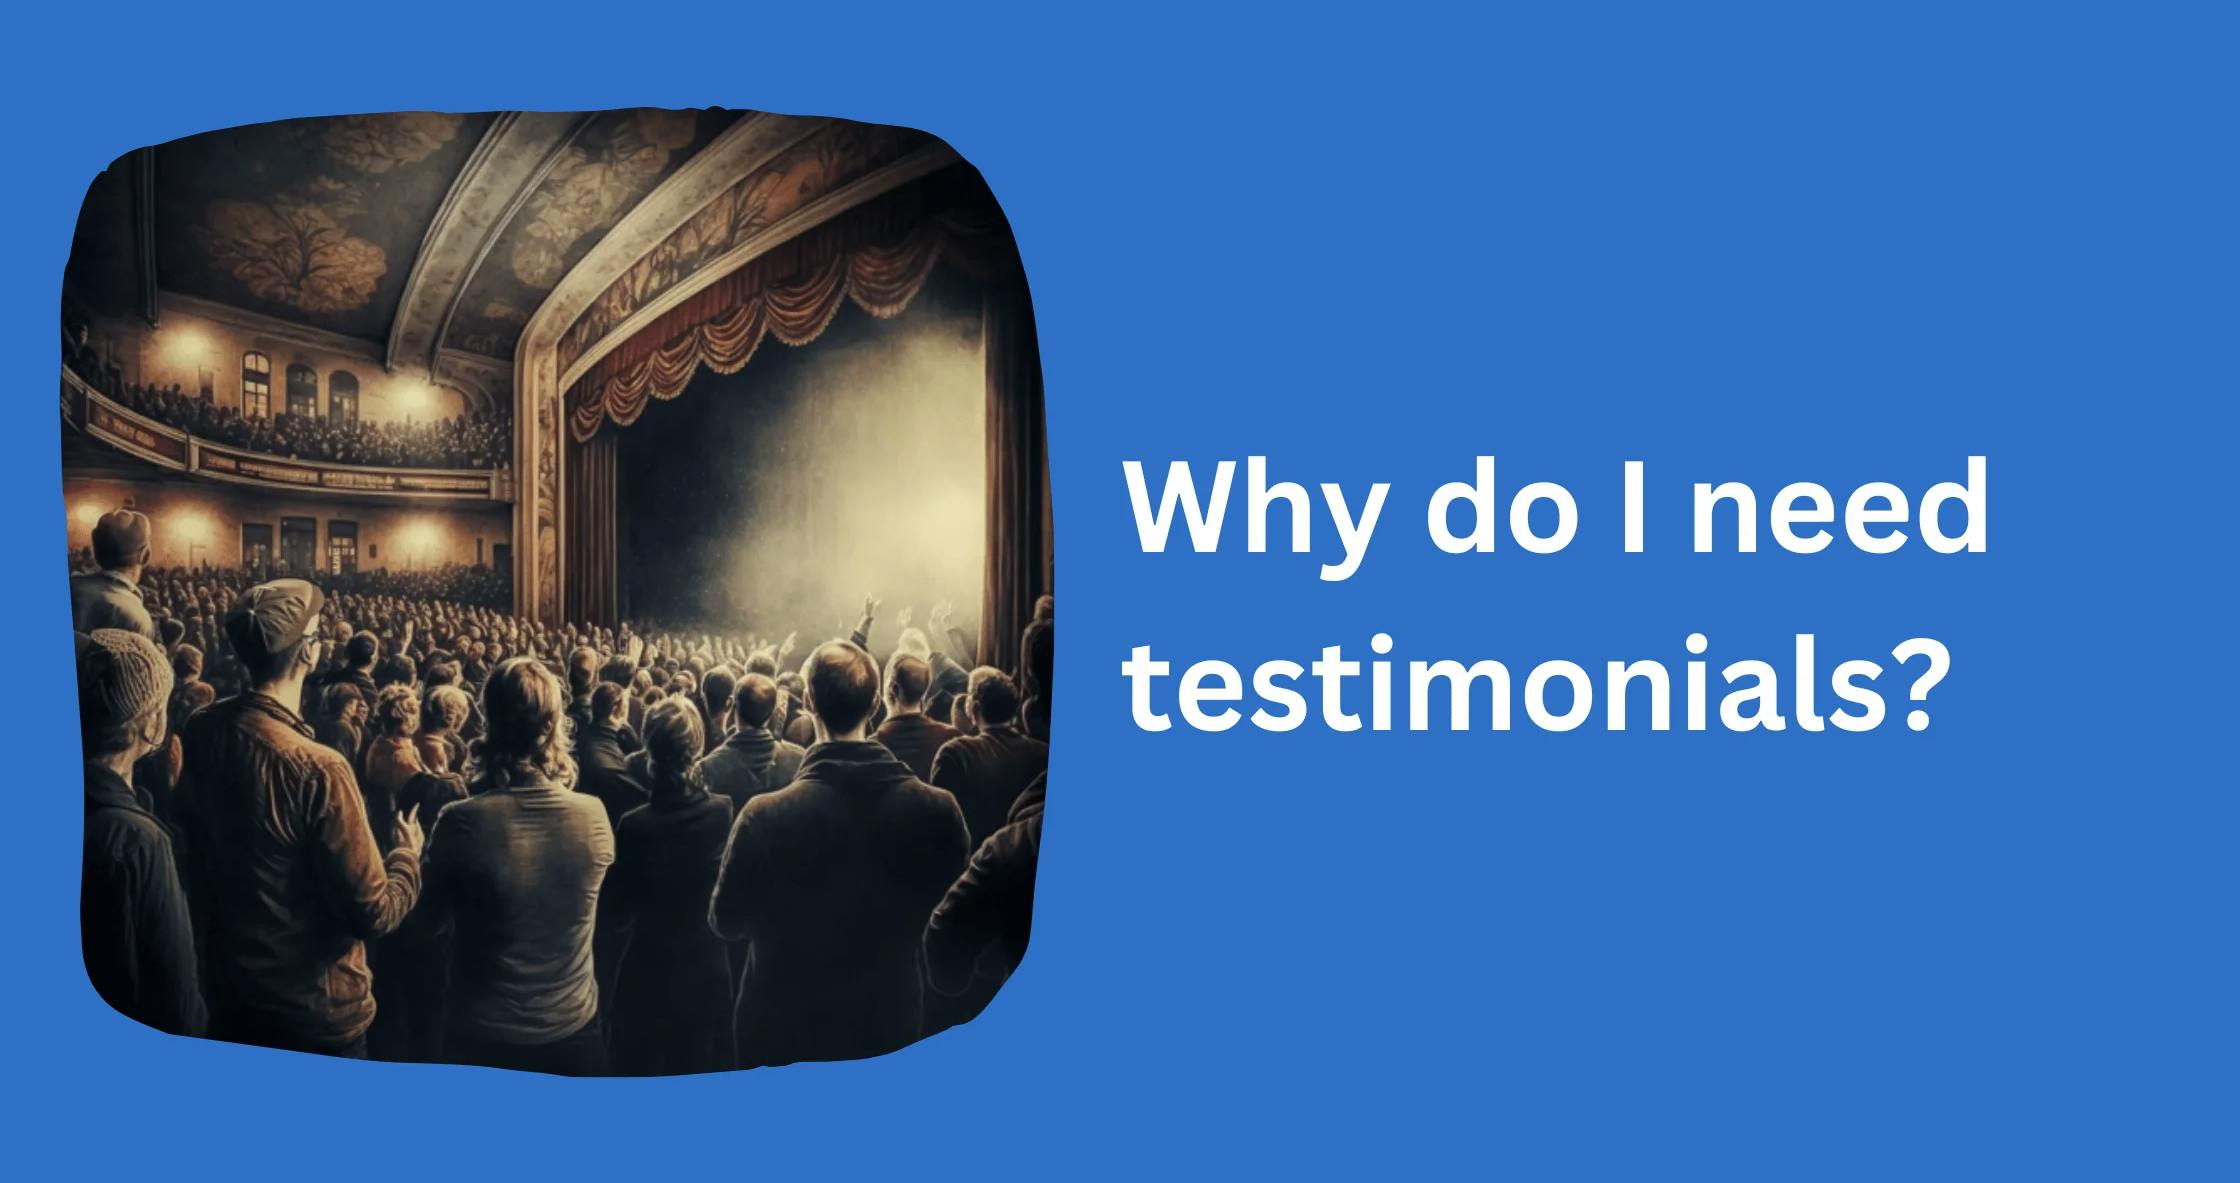 Why do I need testimonials?